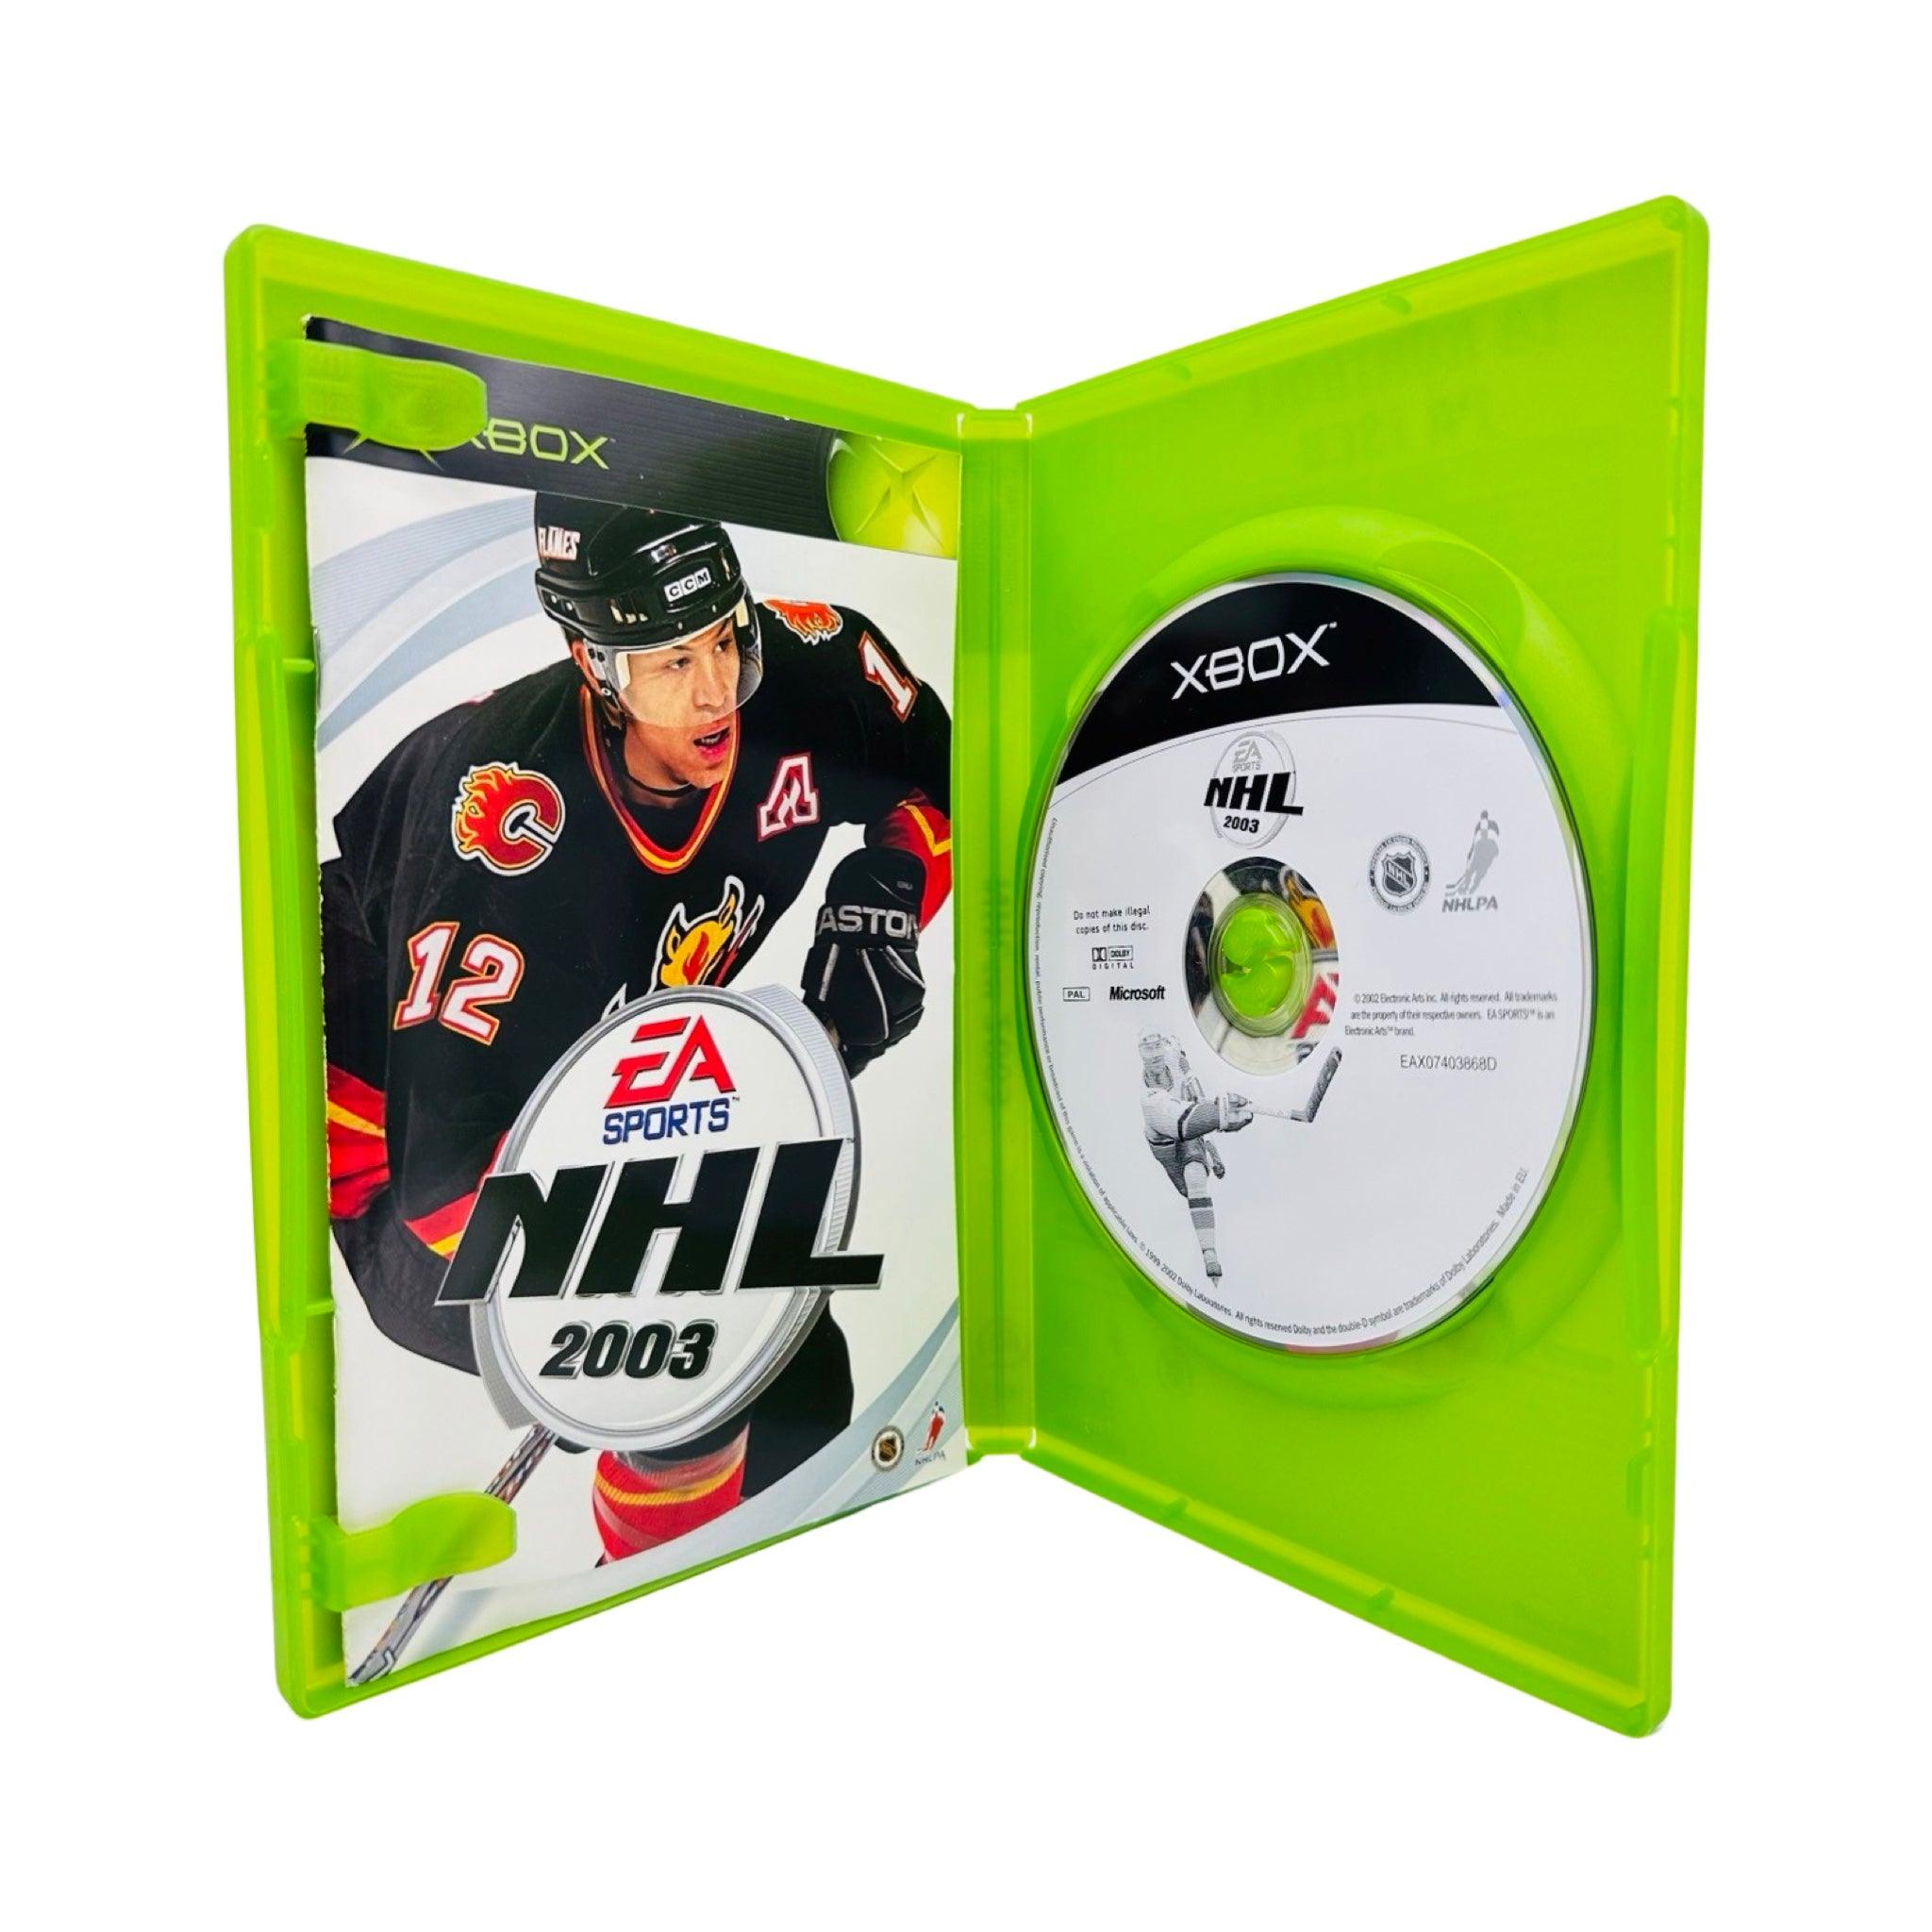 Xbox: NHL 2003 - RetroGaming.no